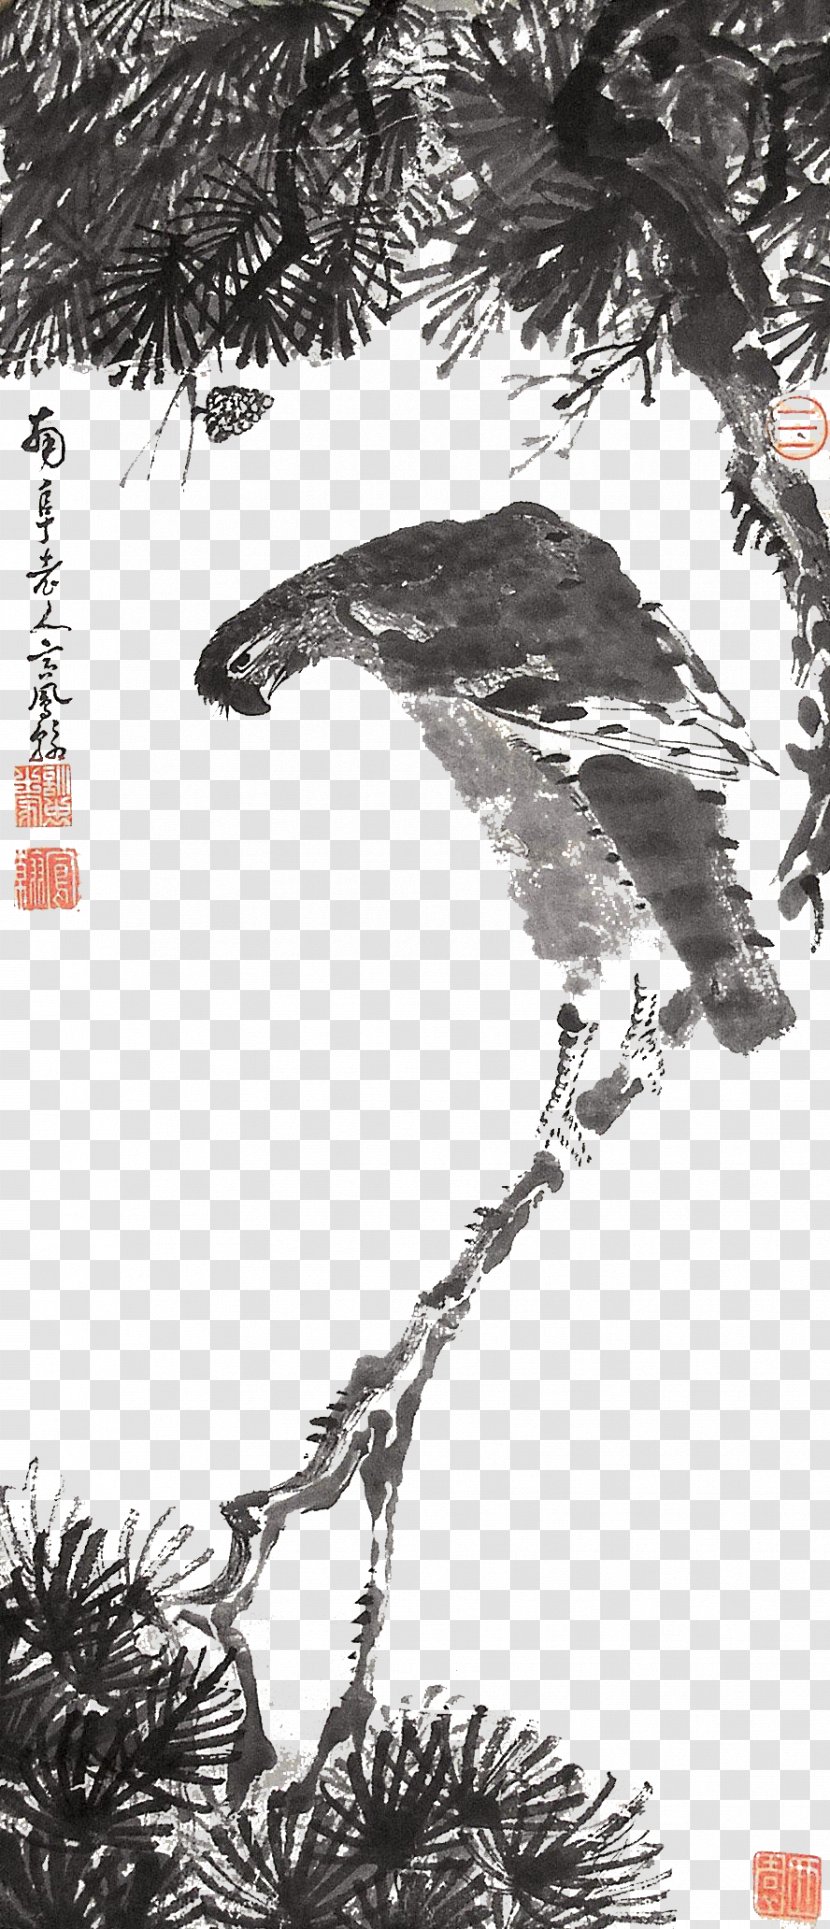 Graphic Design Download Illustration - Plant - Eagle Ink Material Transparent PNG